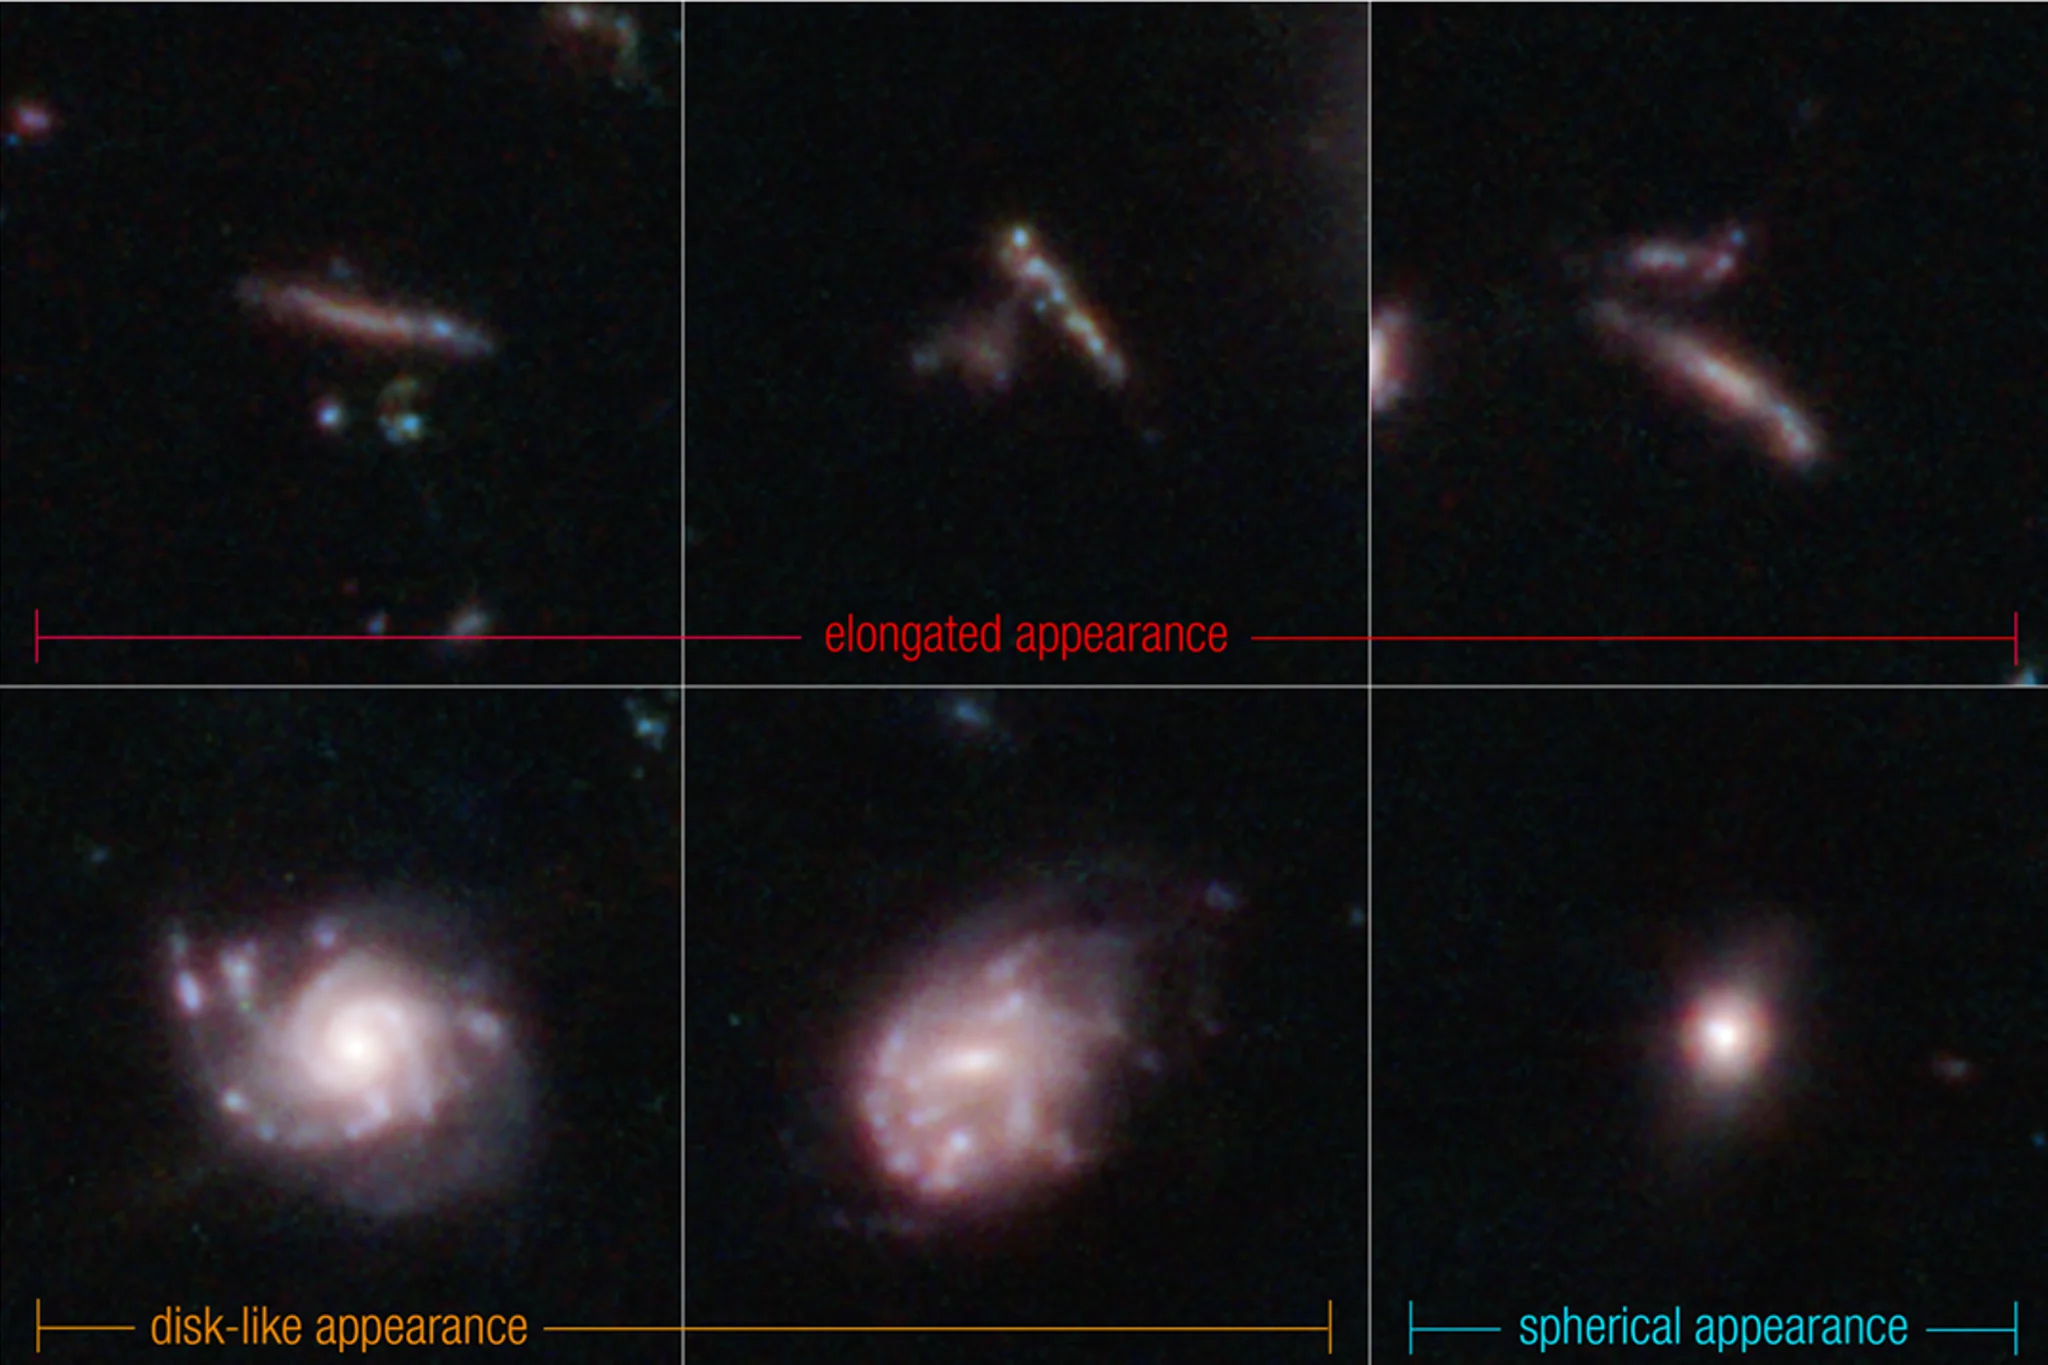 这张图片显示韦伯太空望远镜所拍摄到的一些星系照片，早期的星系通常呈现扁平且细长的形状，就像冲浪板和面条（如上列）；而现今星系多呈现螺旋结构或椭圆形状（如下列）。